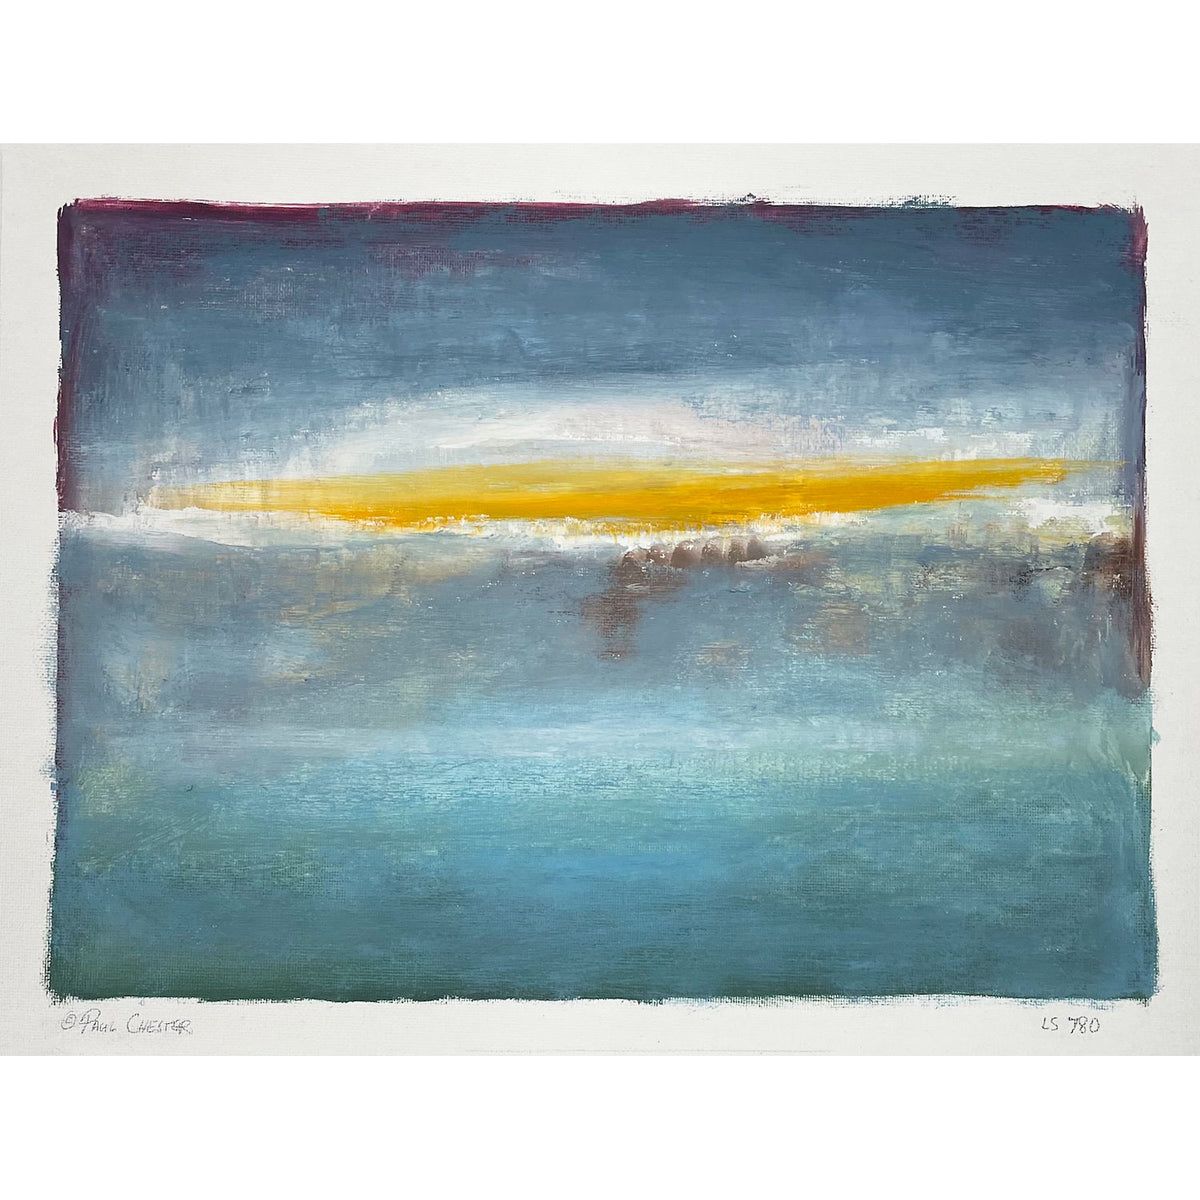 Paul Chester - Landscape Study 780, 10" x 14"